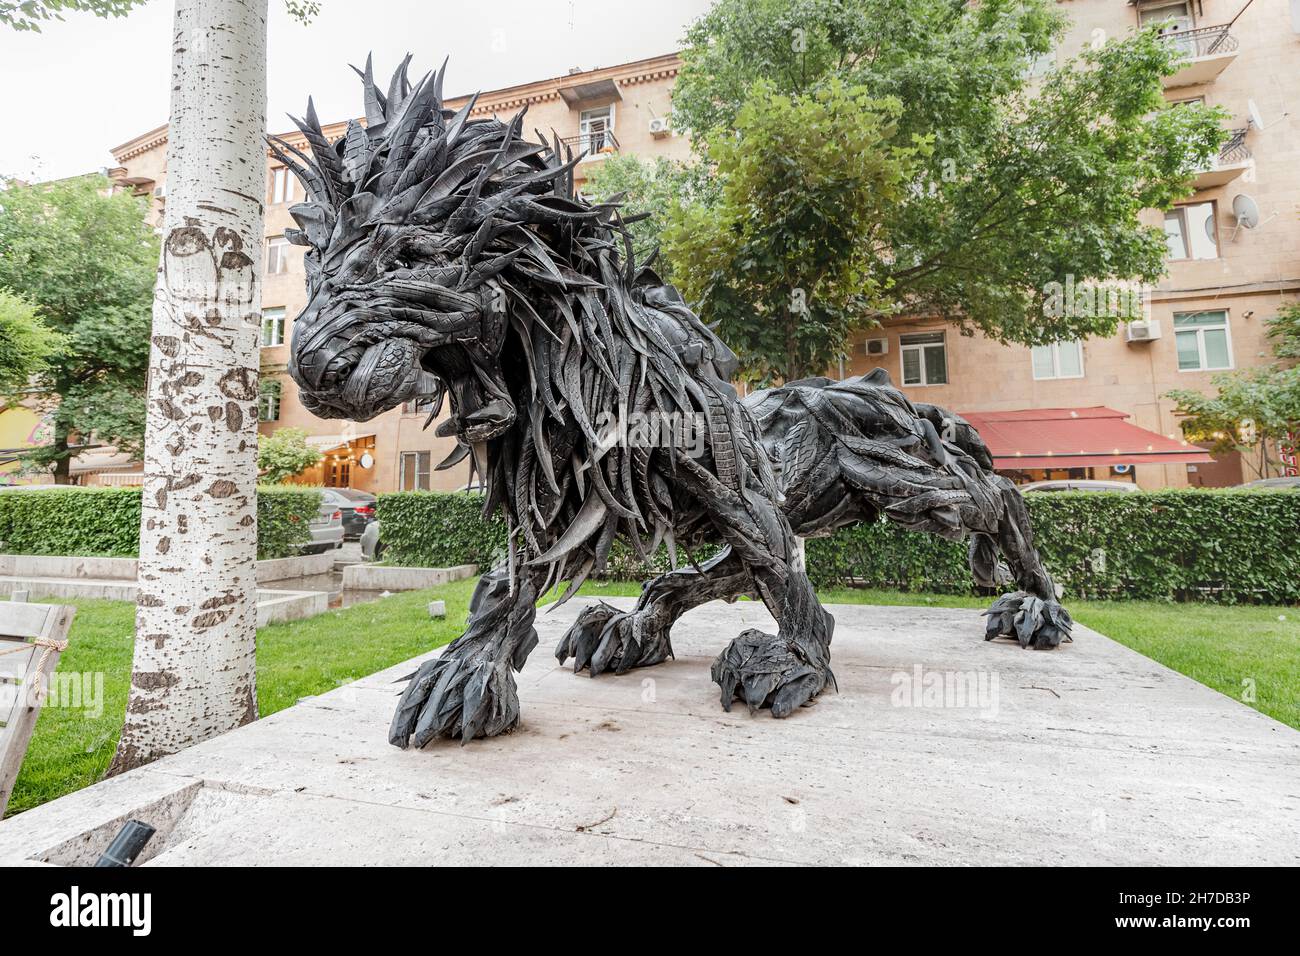 24 mai 2021, Erevan, Arménie : sculpture d'un lion assemblé à partir de pneus de voiture usagés dans l'espace extérieur de l'art Cascade Banque D'Images